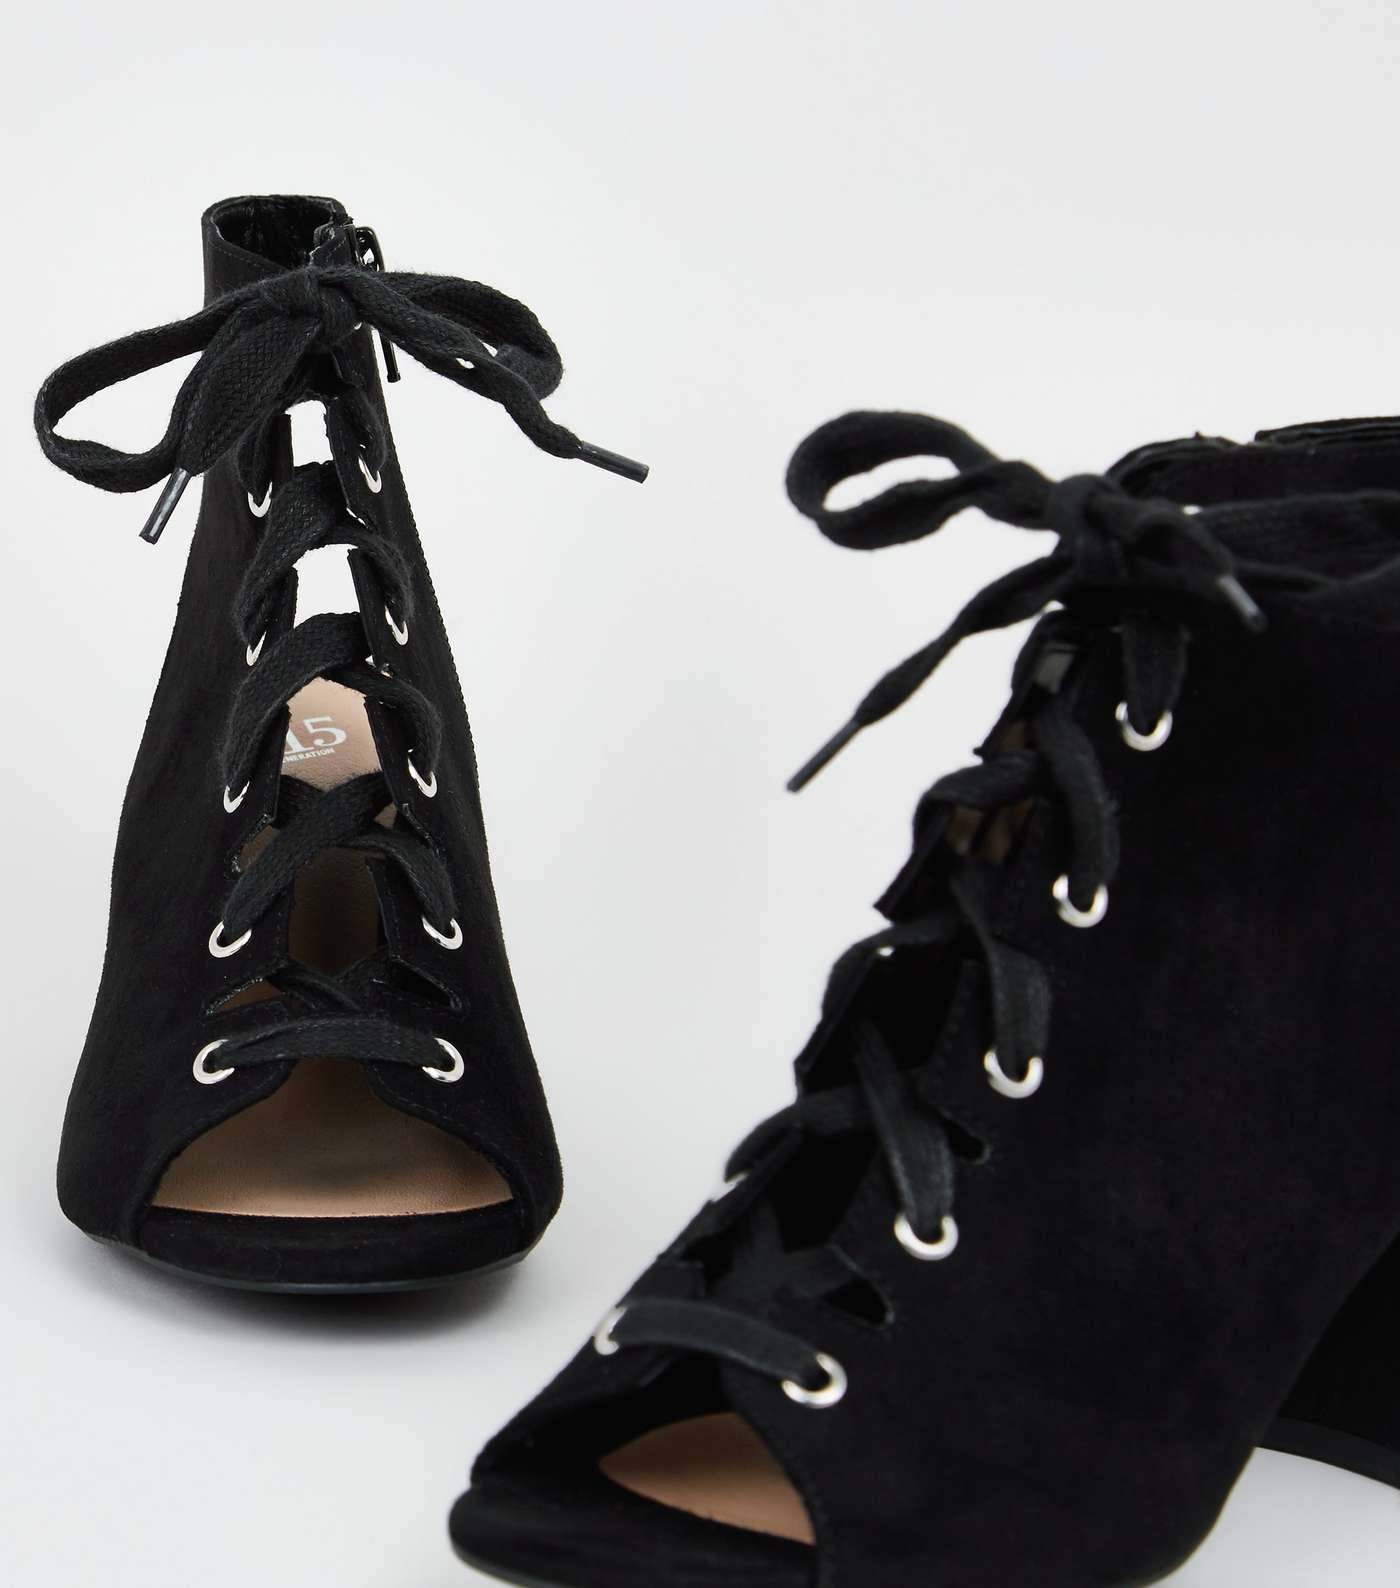 Girls Black Lace Up Peep Toe Shoe Boots Image 3